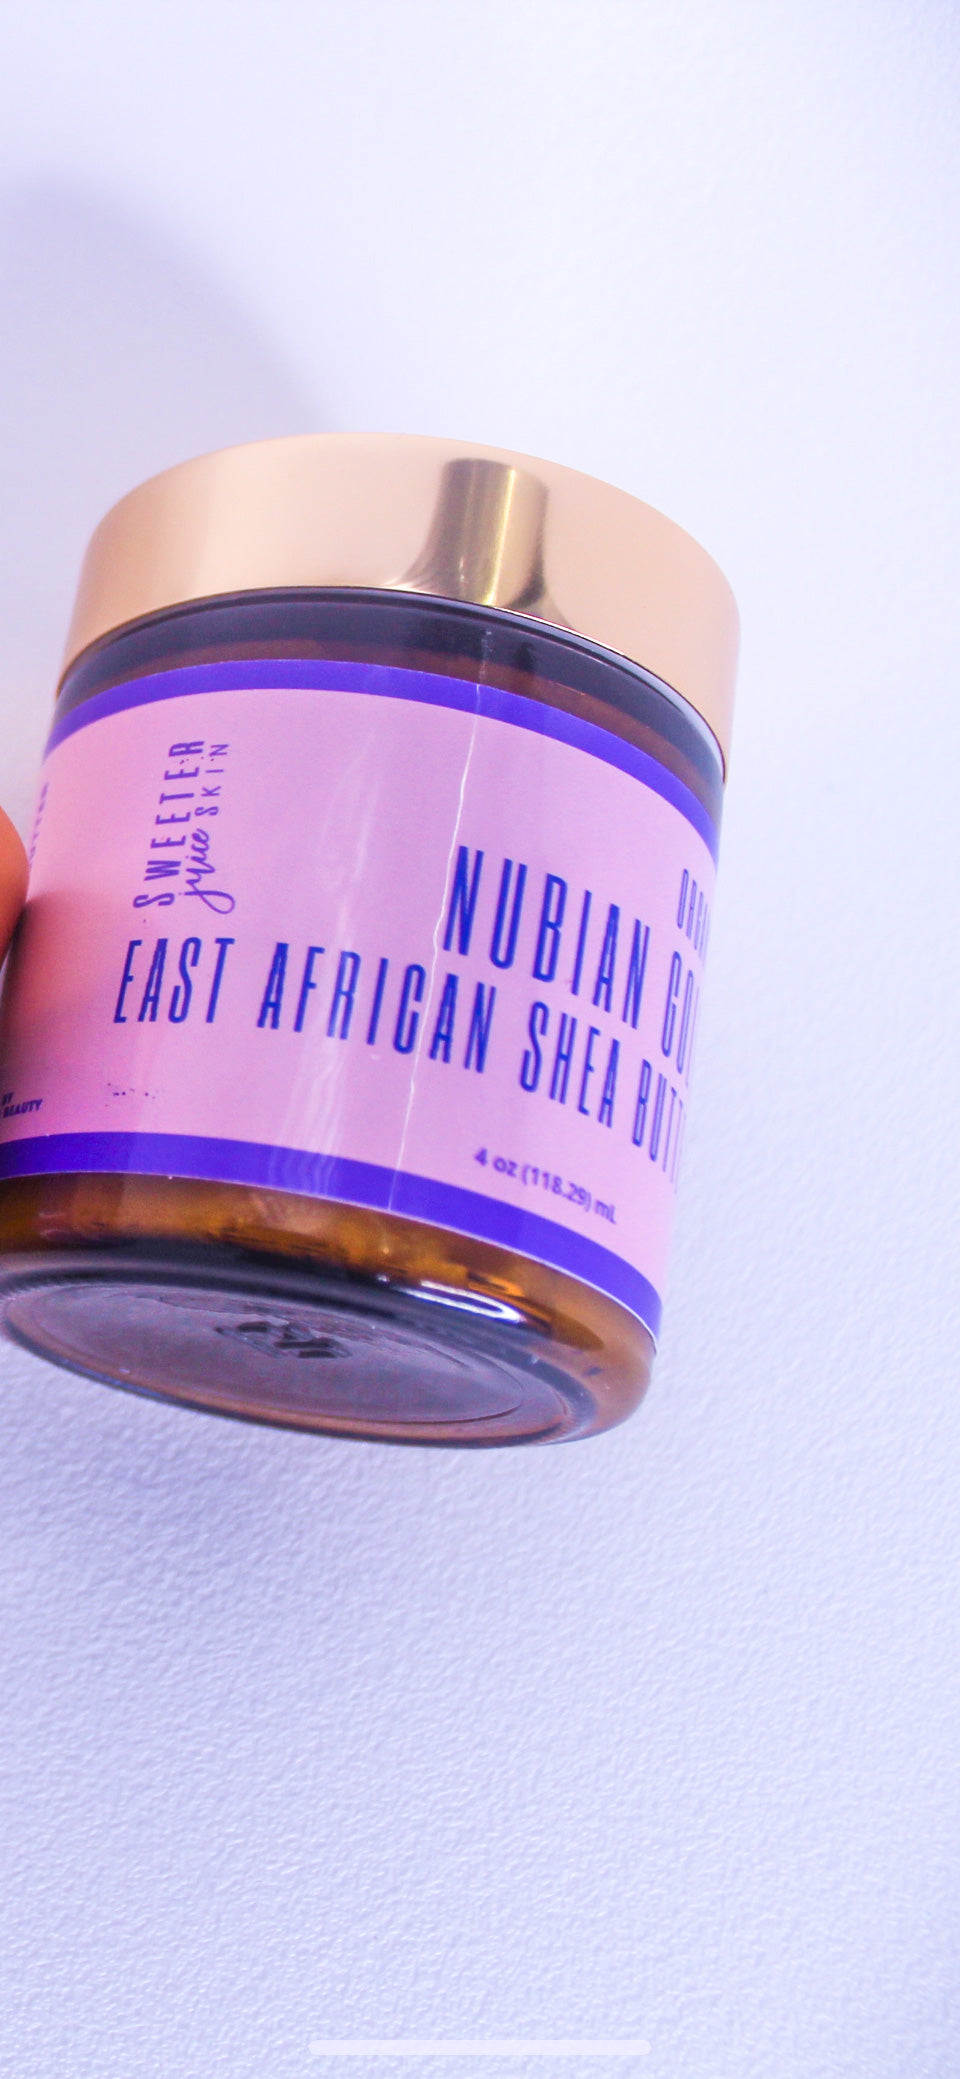 Nubian Gold : East African Shea Butter (Shea Niloteca) - Sweeter Juice Skin